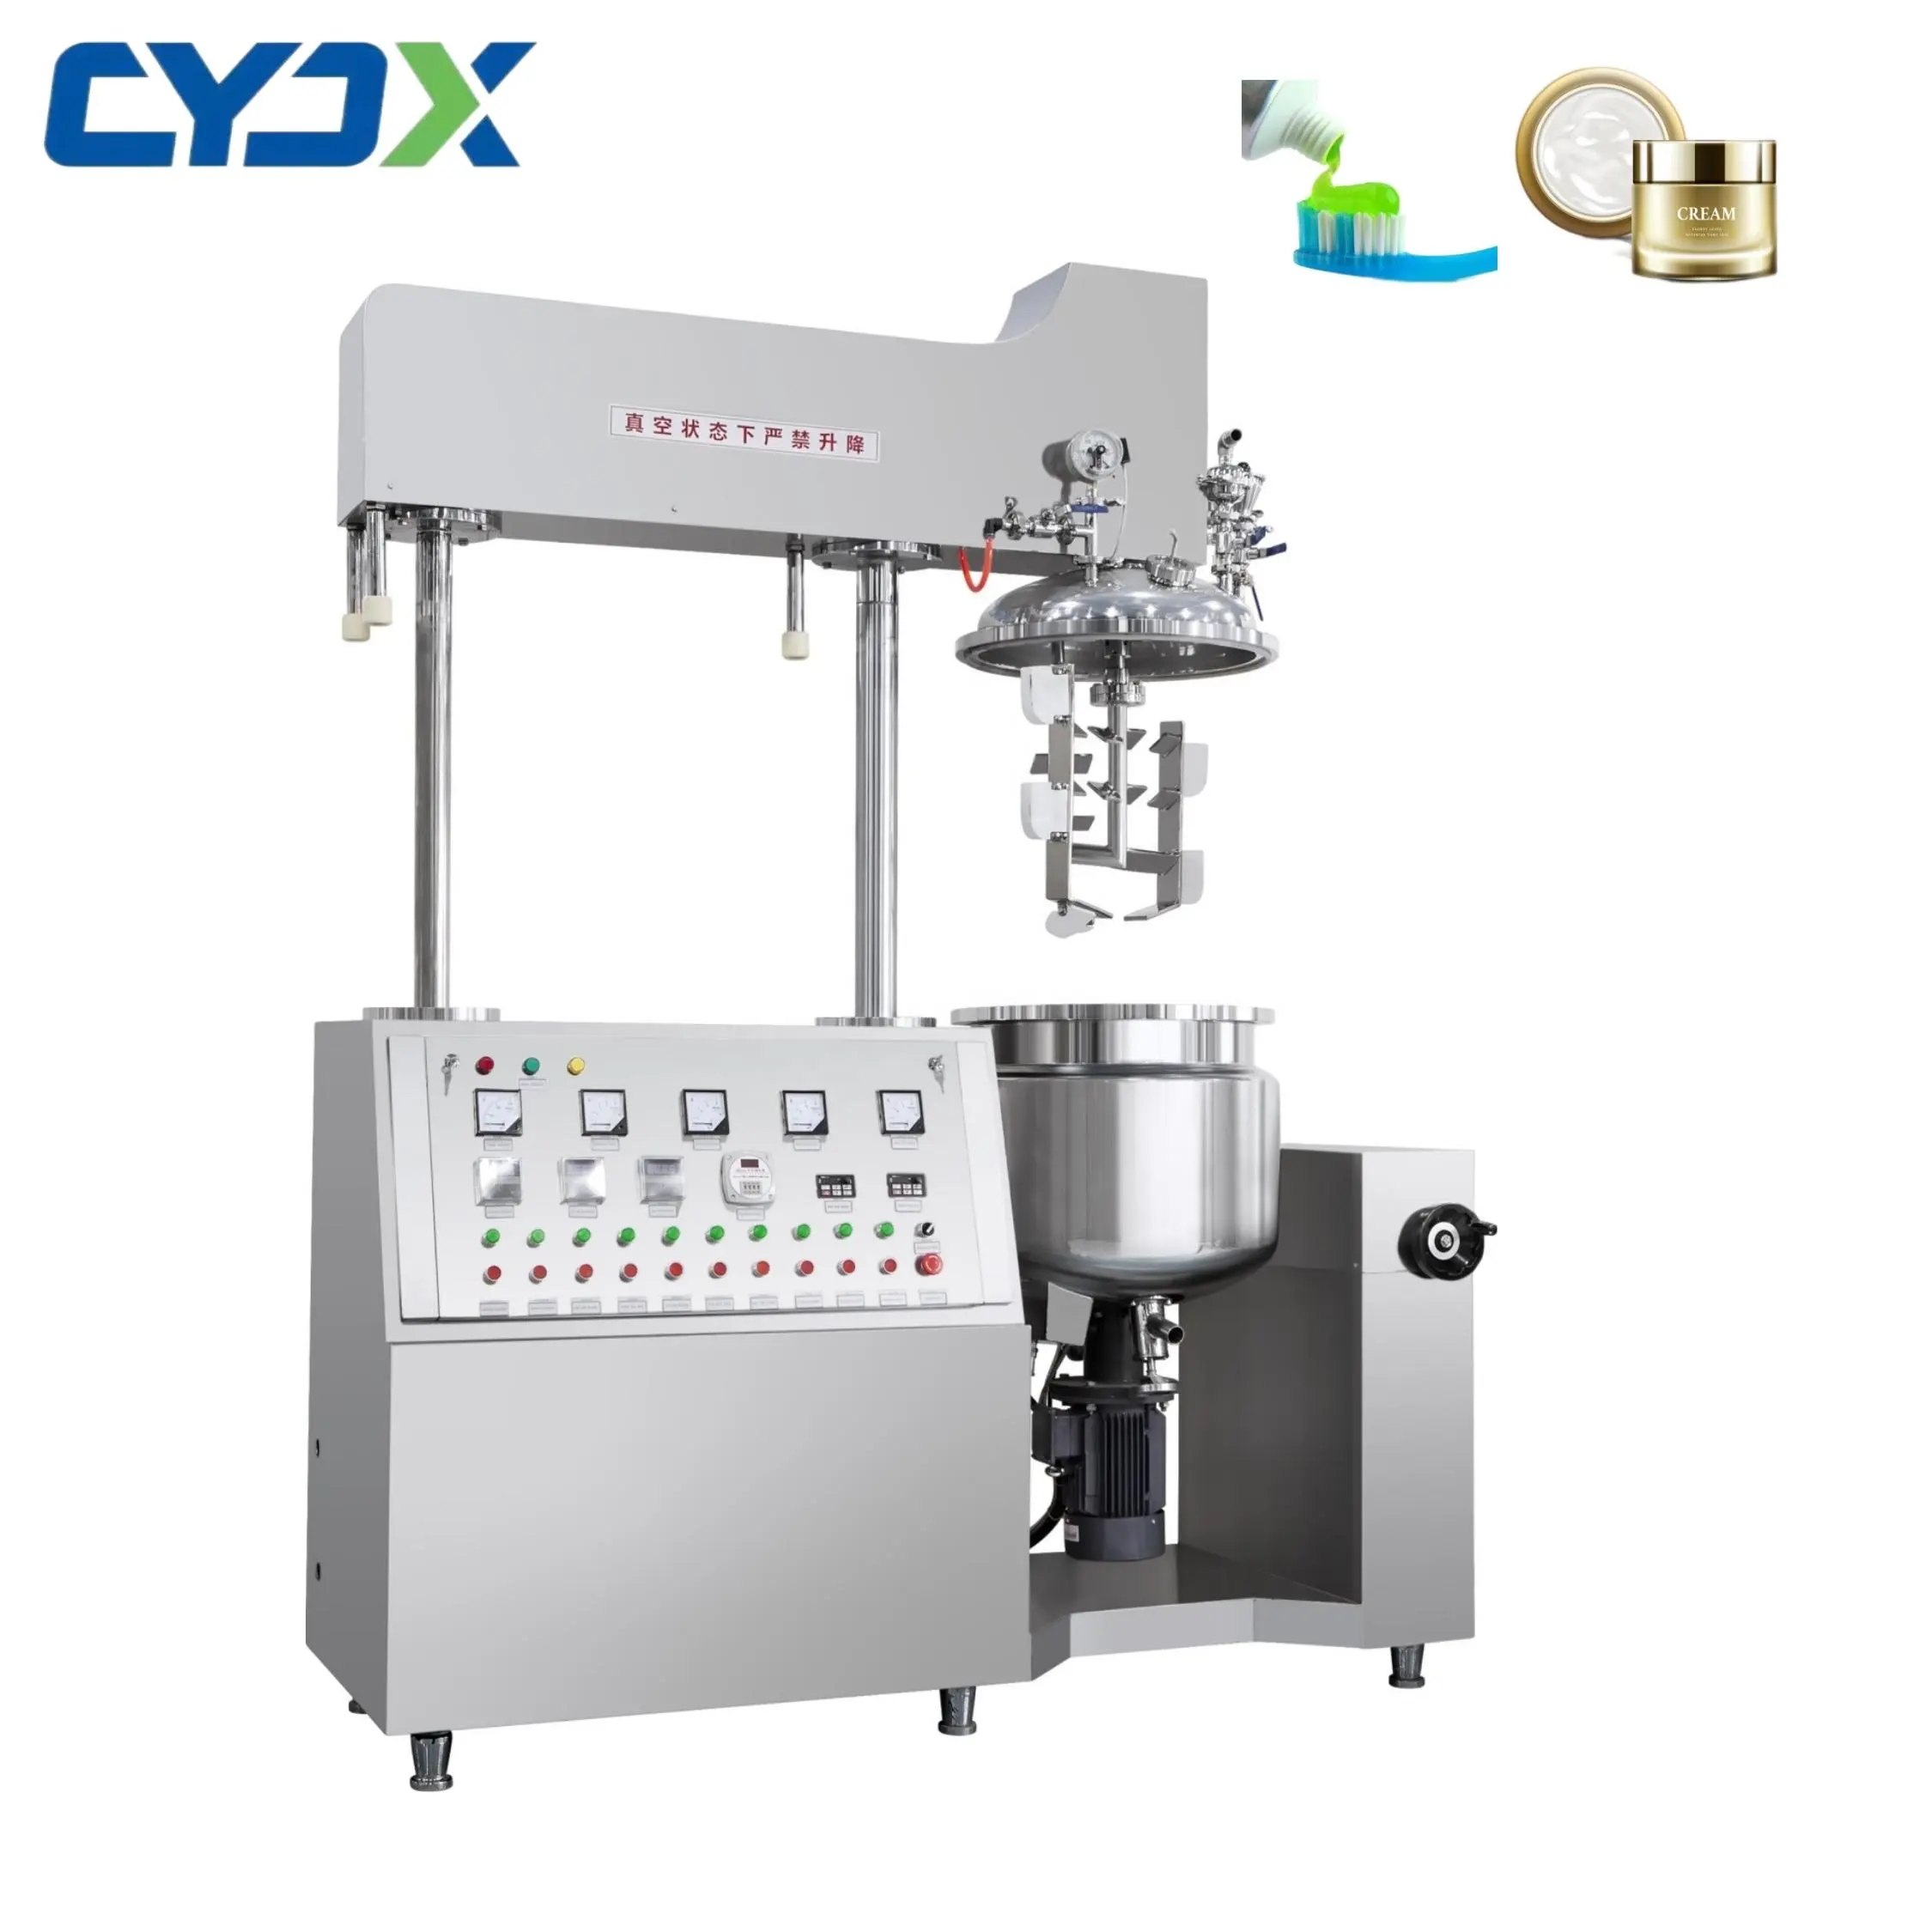 CYJXハイシアーターボミキサー800-2000l化粧品生産設備ベビーホワイトニングクリームミキサー真空増倍剤均一化